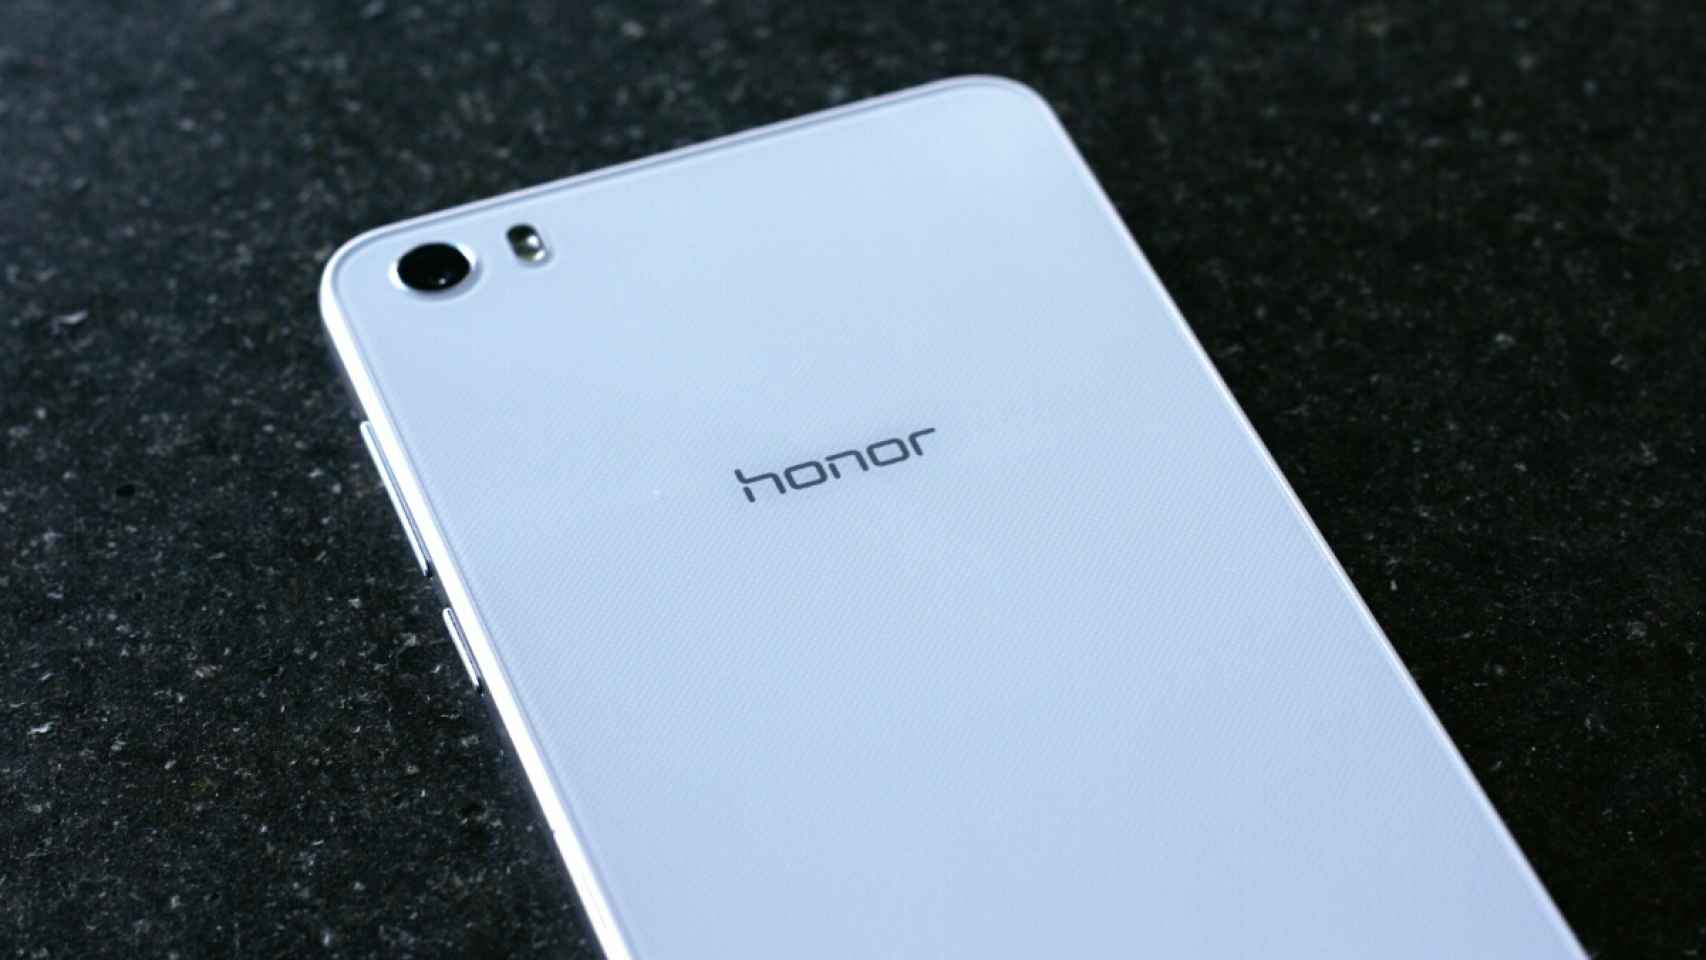 Huawei Honor 7 llegaría en dos versiones diferentes, una con 4GB de RAM